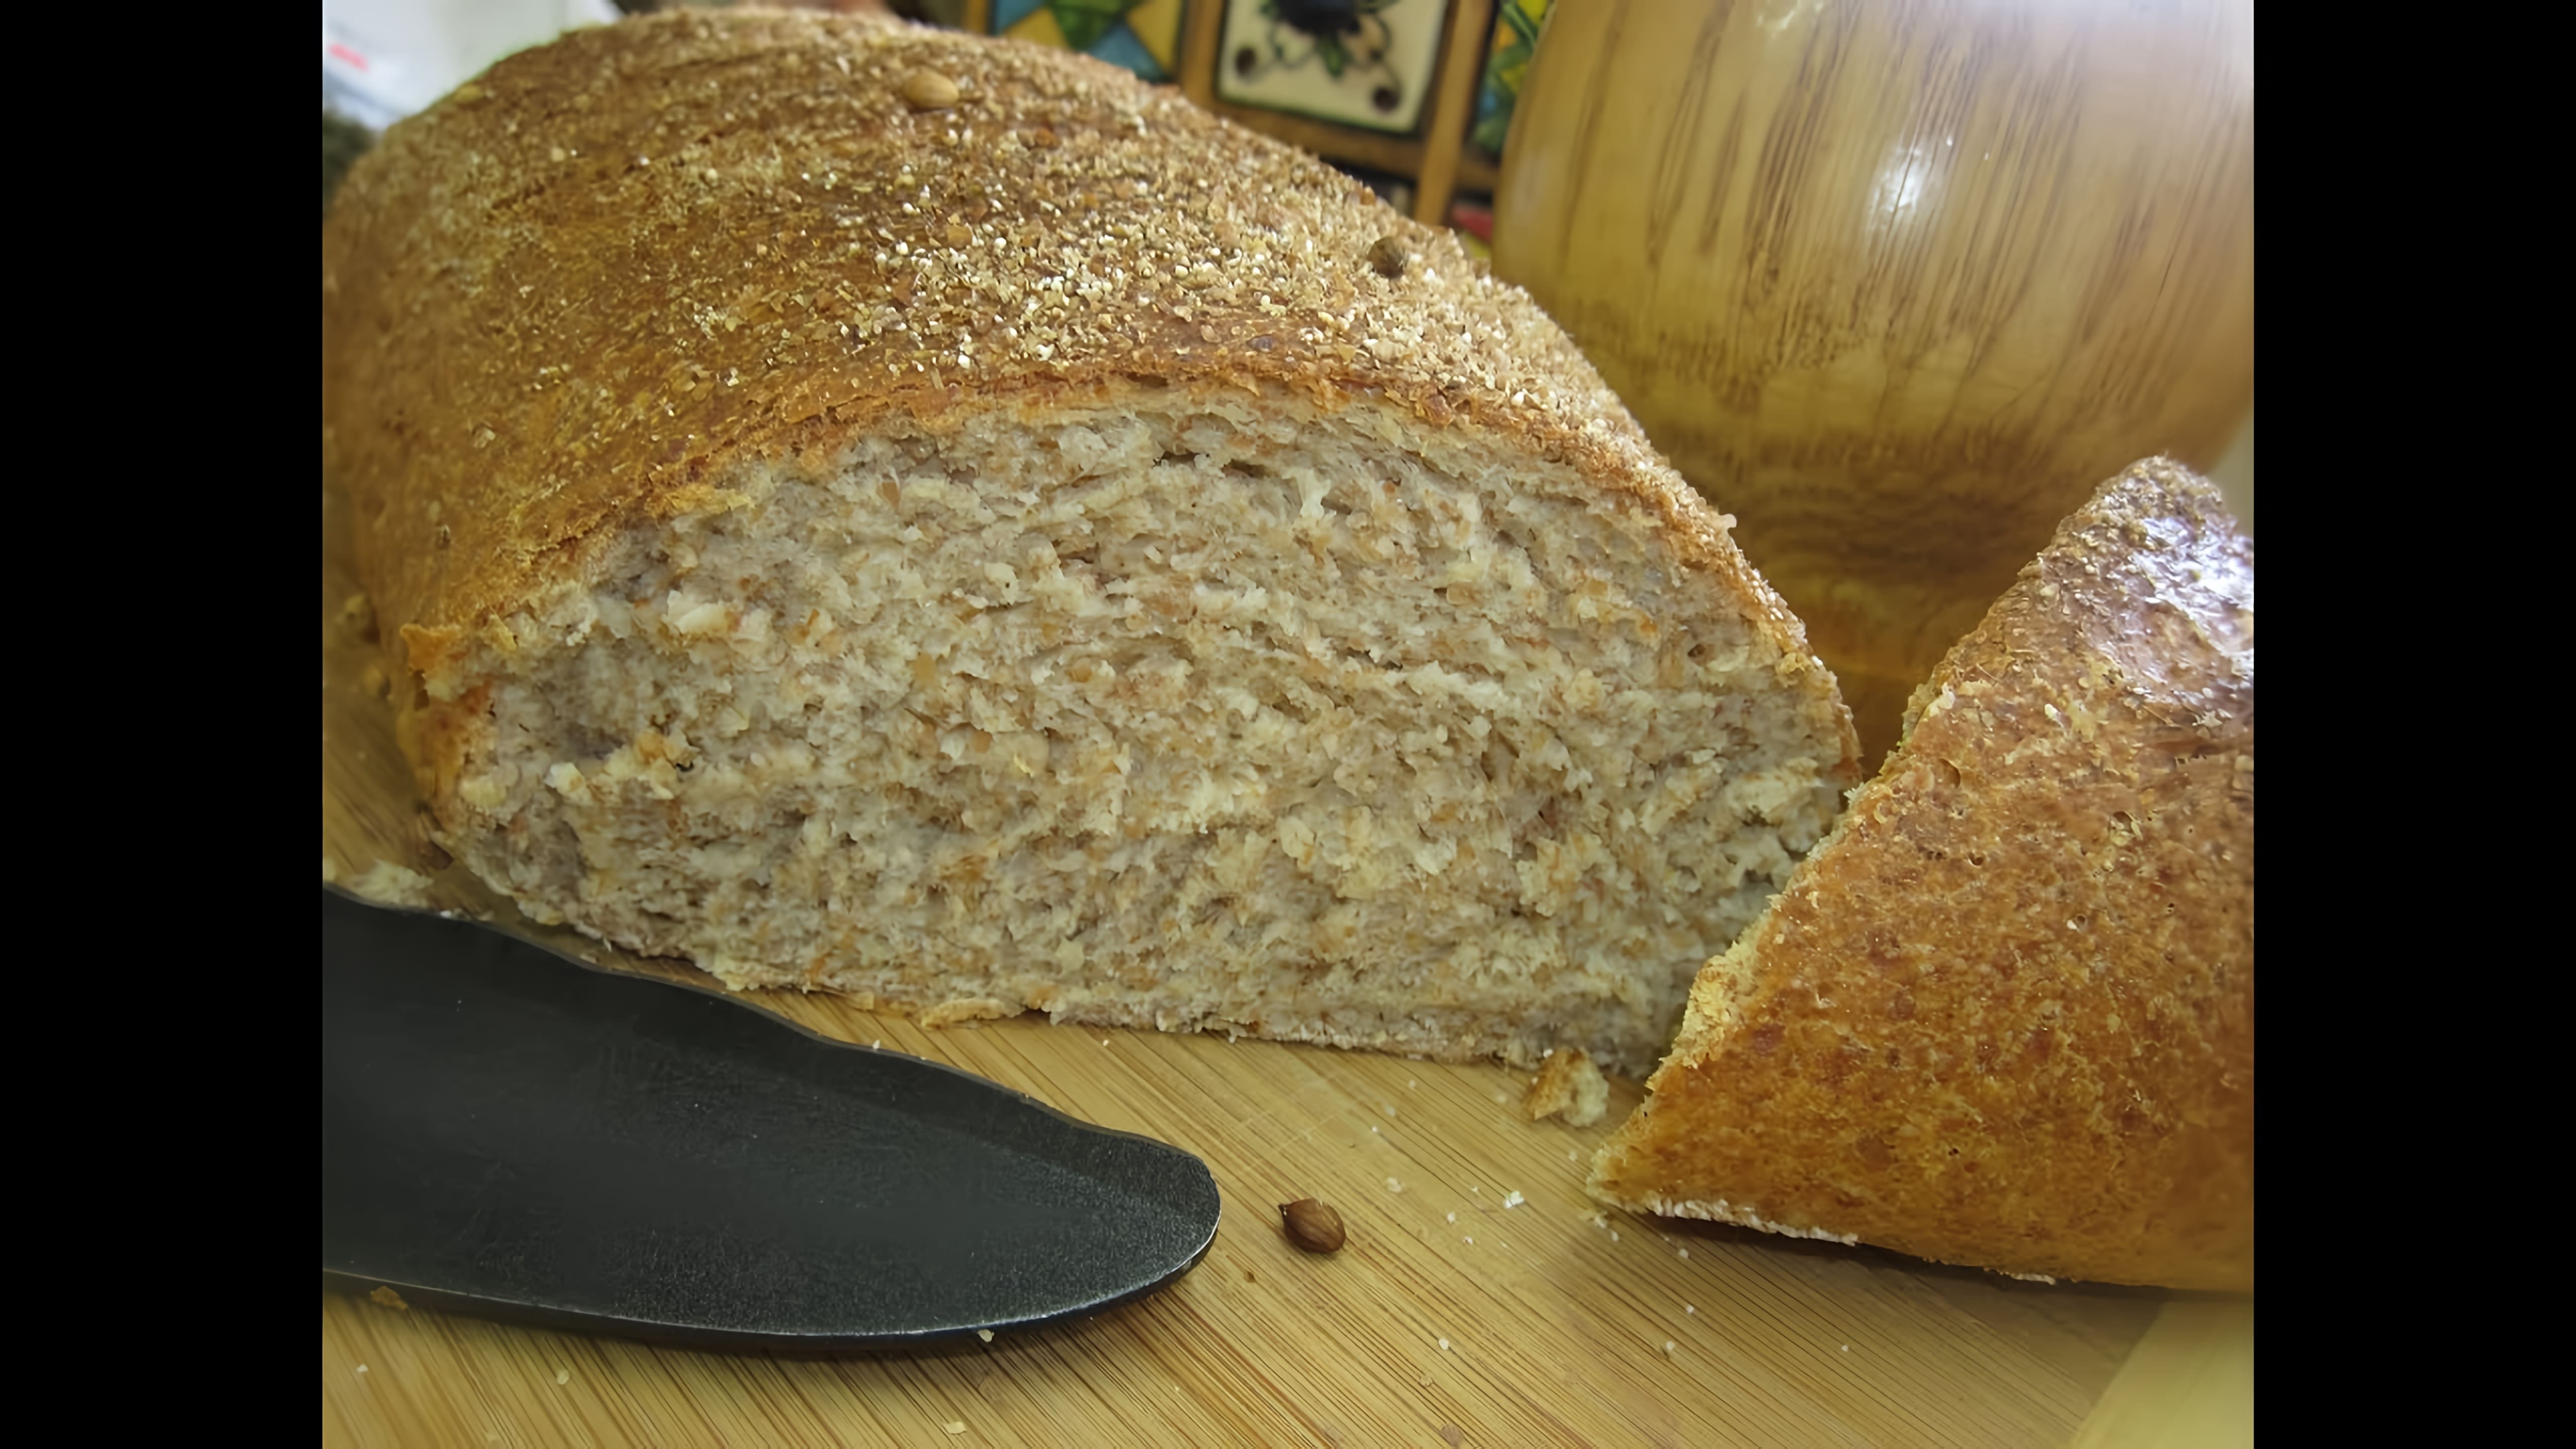 В этом видео демонстрируется рецепт приготовления пшеничного хлеба с отрубями